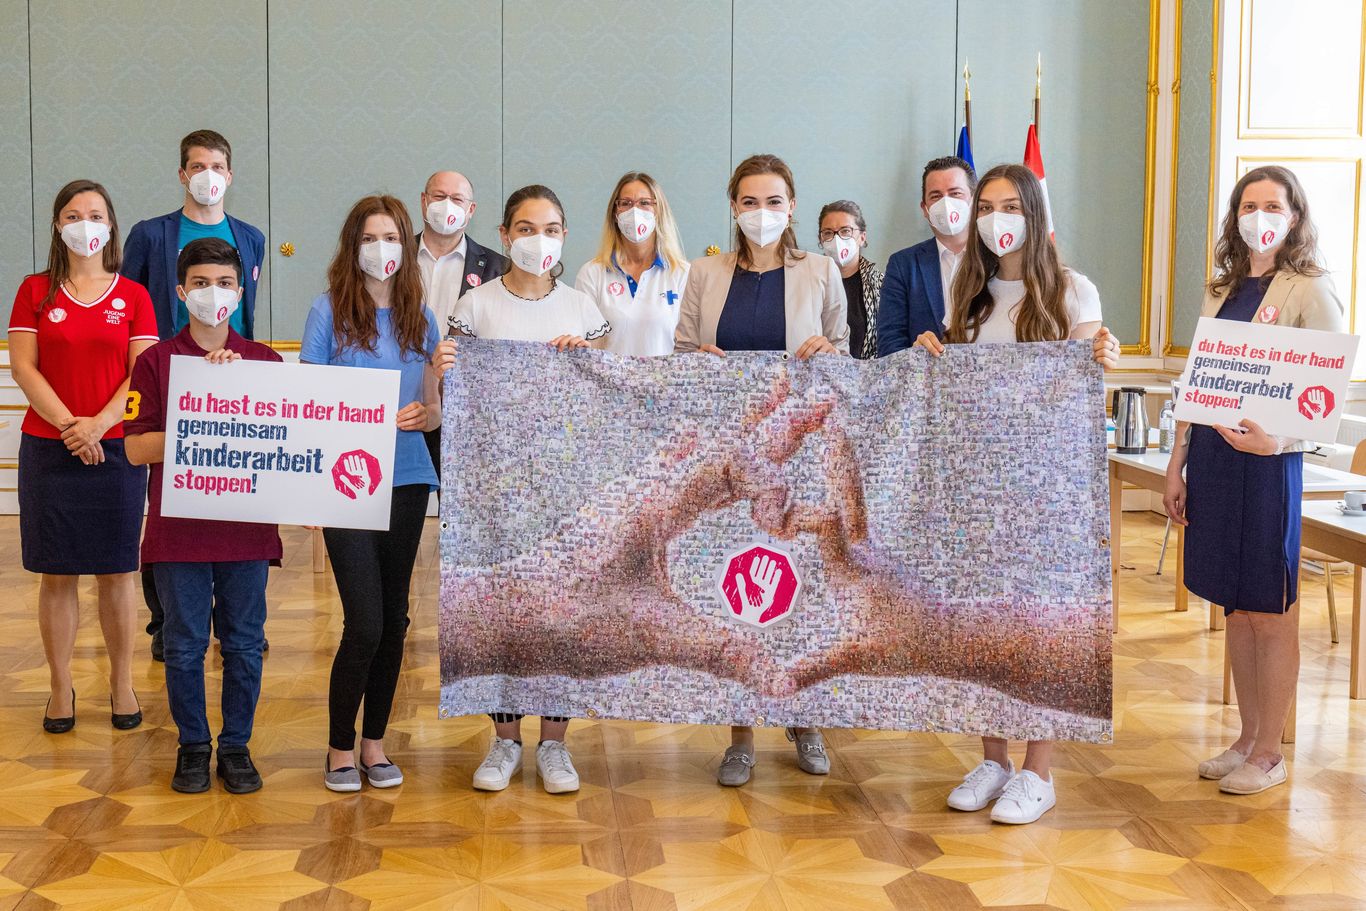 Kinder der Aktion Kinderarbeit stoppen halten mit Bundesministerin Alma Zadić das Mosaik aus den symbolischen Fotos der Hände gegen Kinderarbeit 